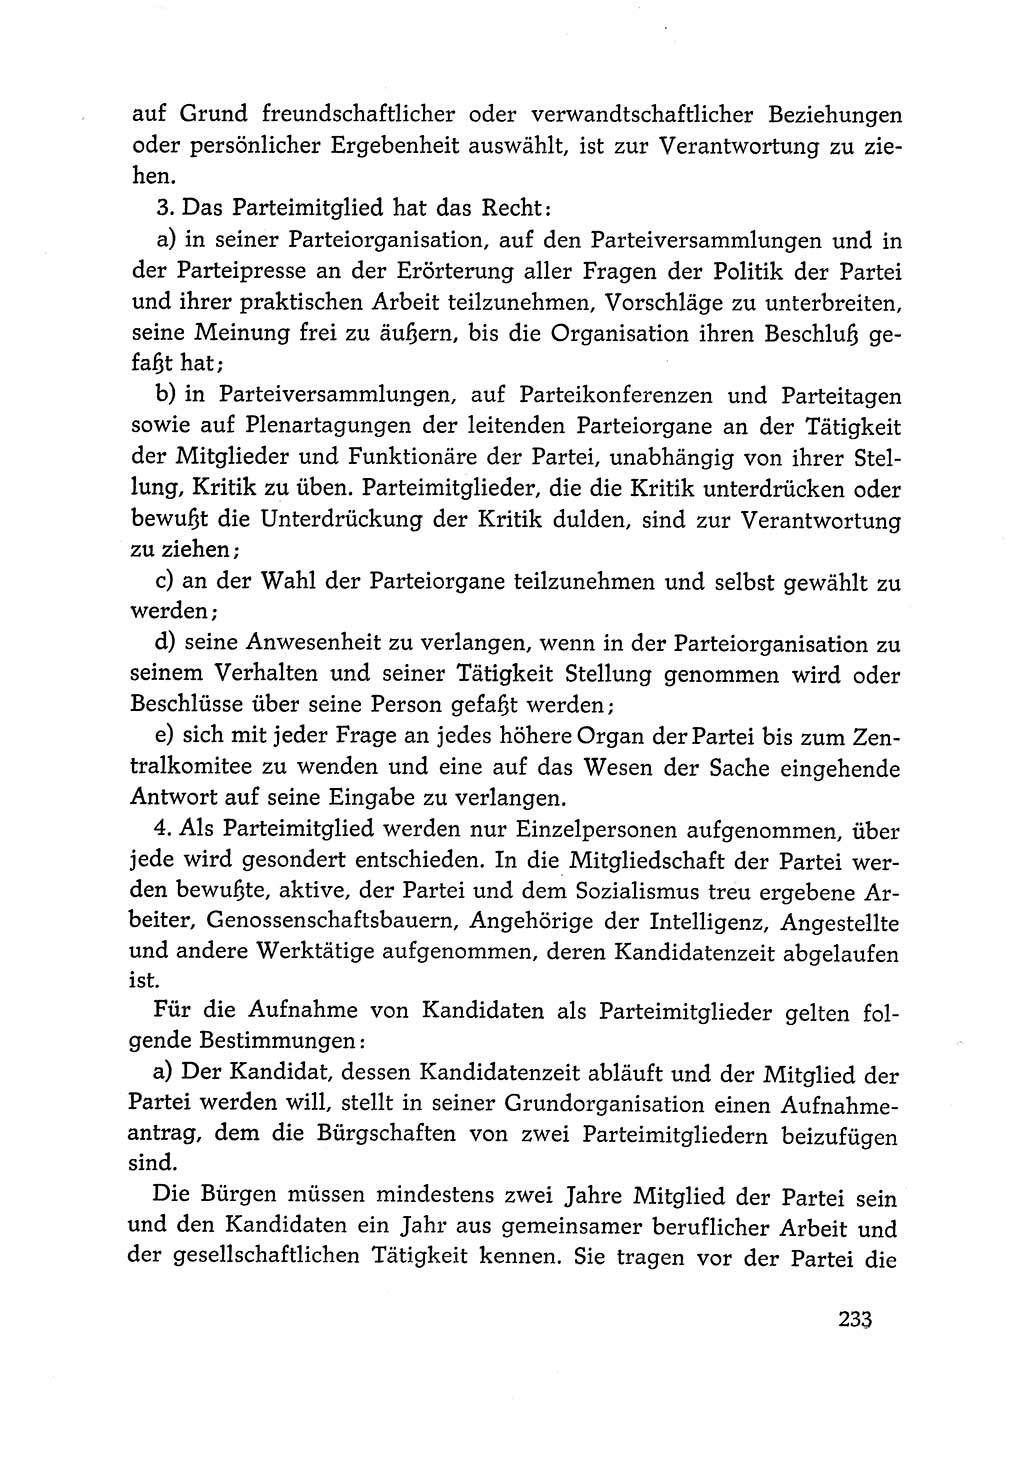 Dokumente der Sozialistischen Einheitspartei Deutschlands (SED) [Deutsche Demokratische Republik (DDR)] 1966-1967, Seite 233 (Dok. SED DDR 1966-1967, S. 233)